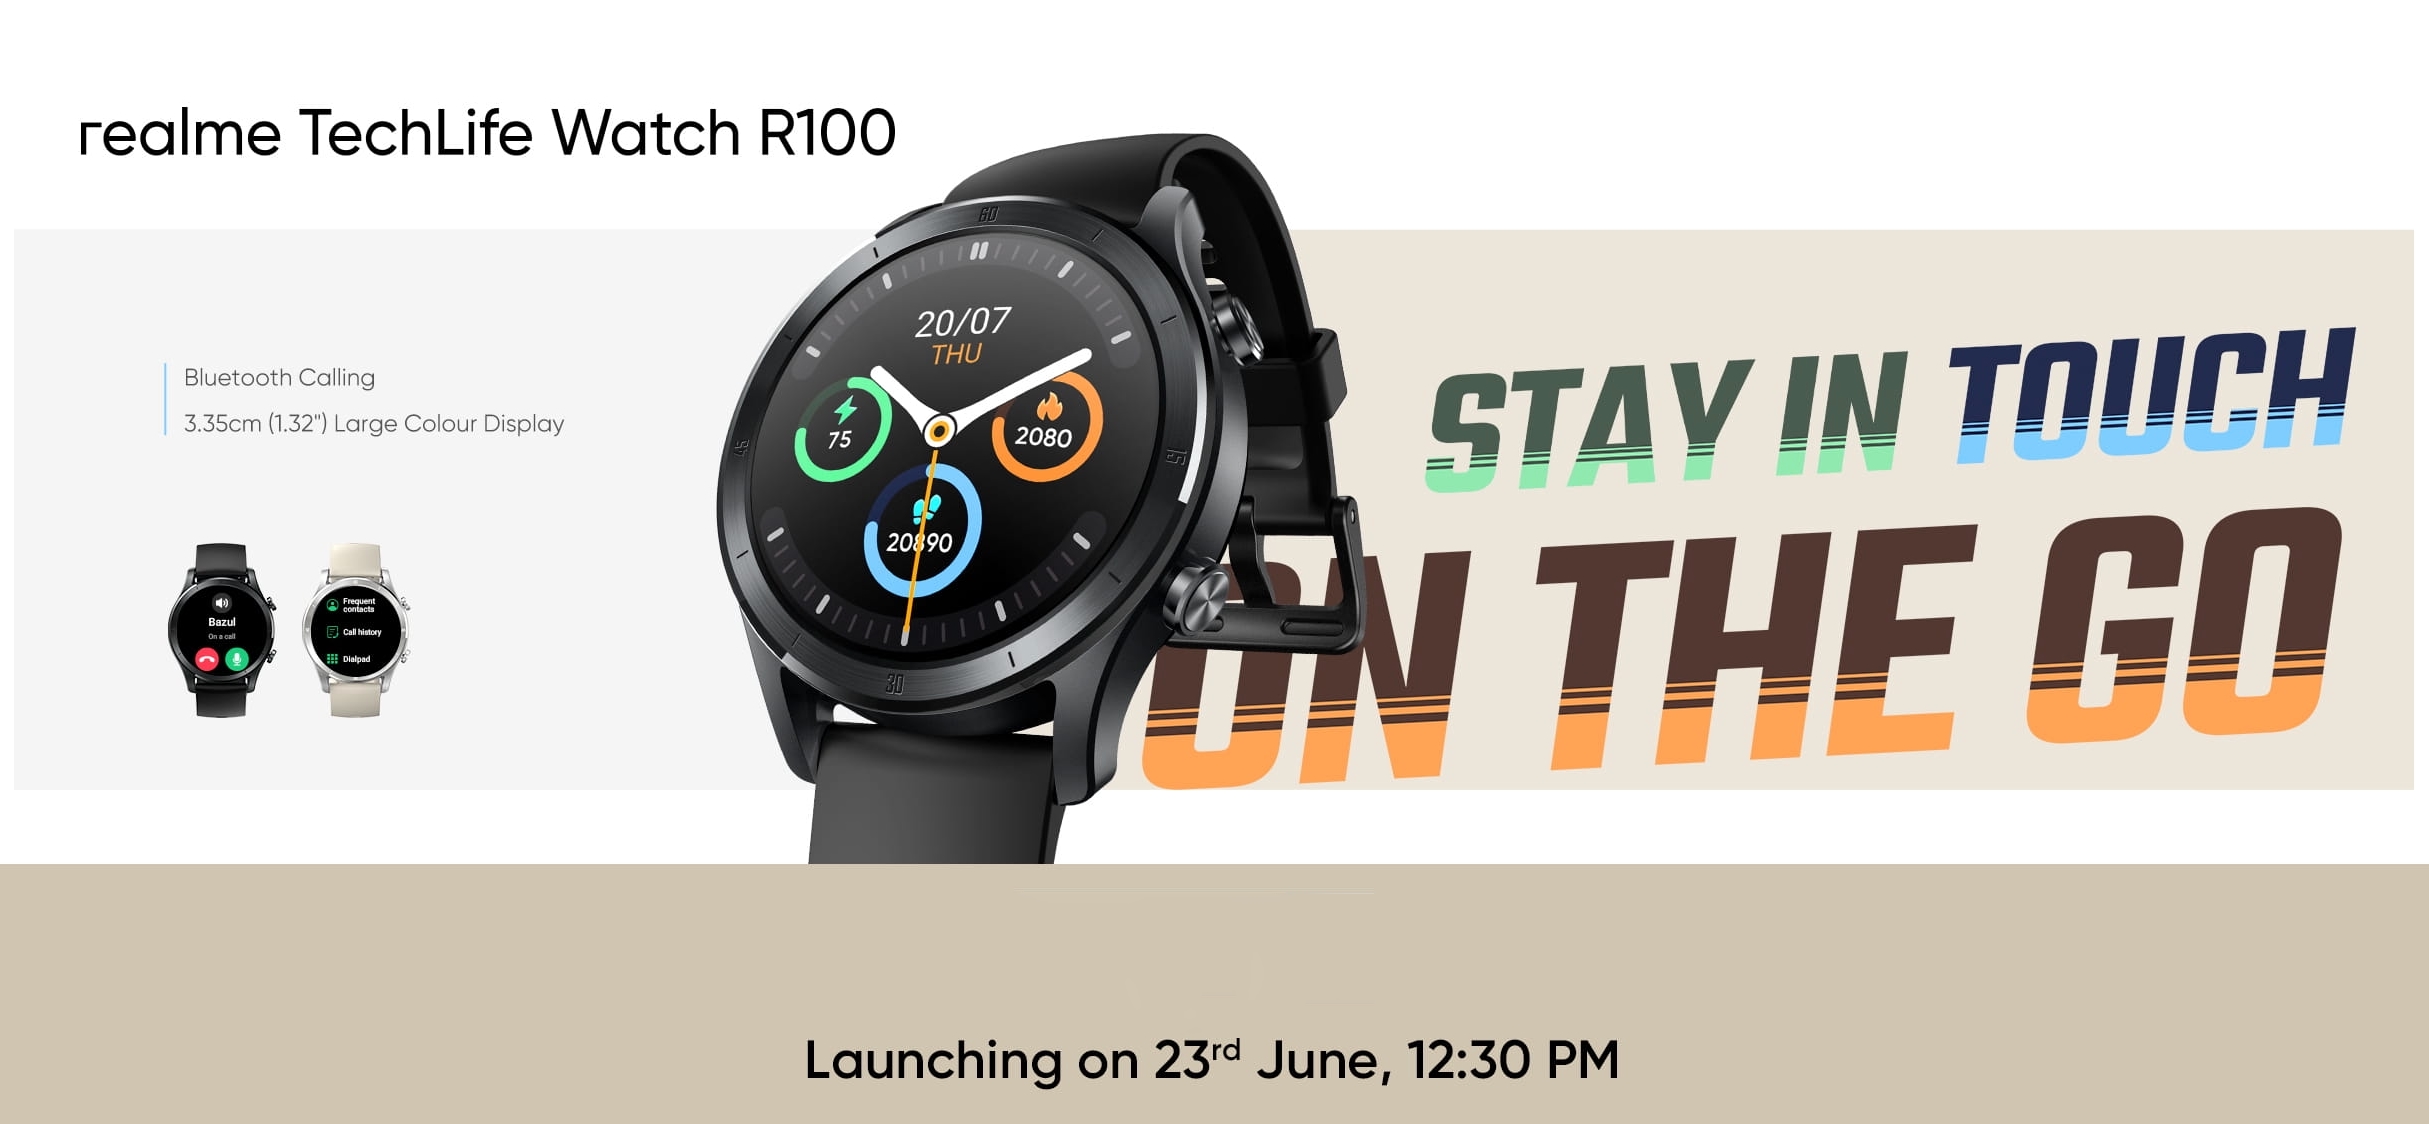 realme techlife watch r100 reloj inteligente con función de llamada y autonomía hasta 7 días el 23 de junio